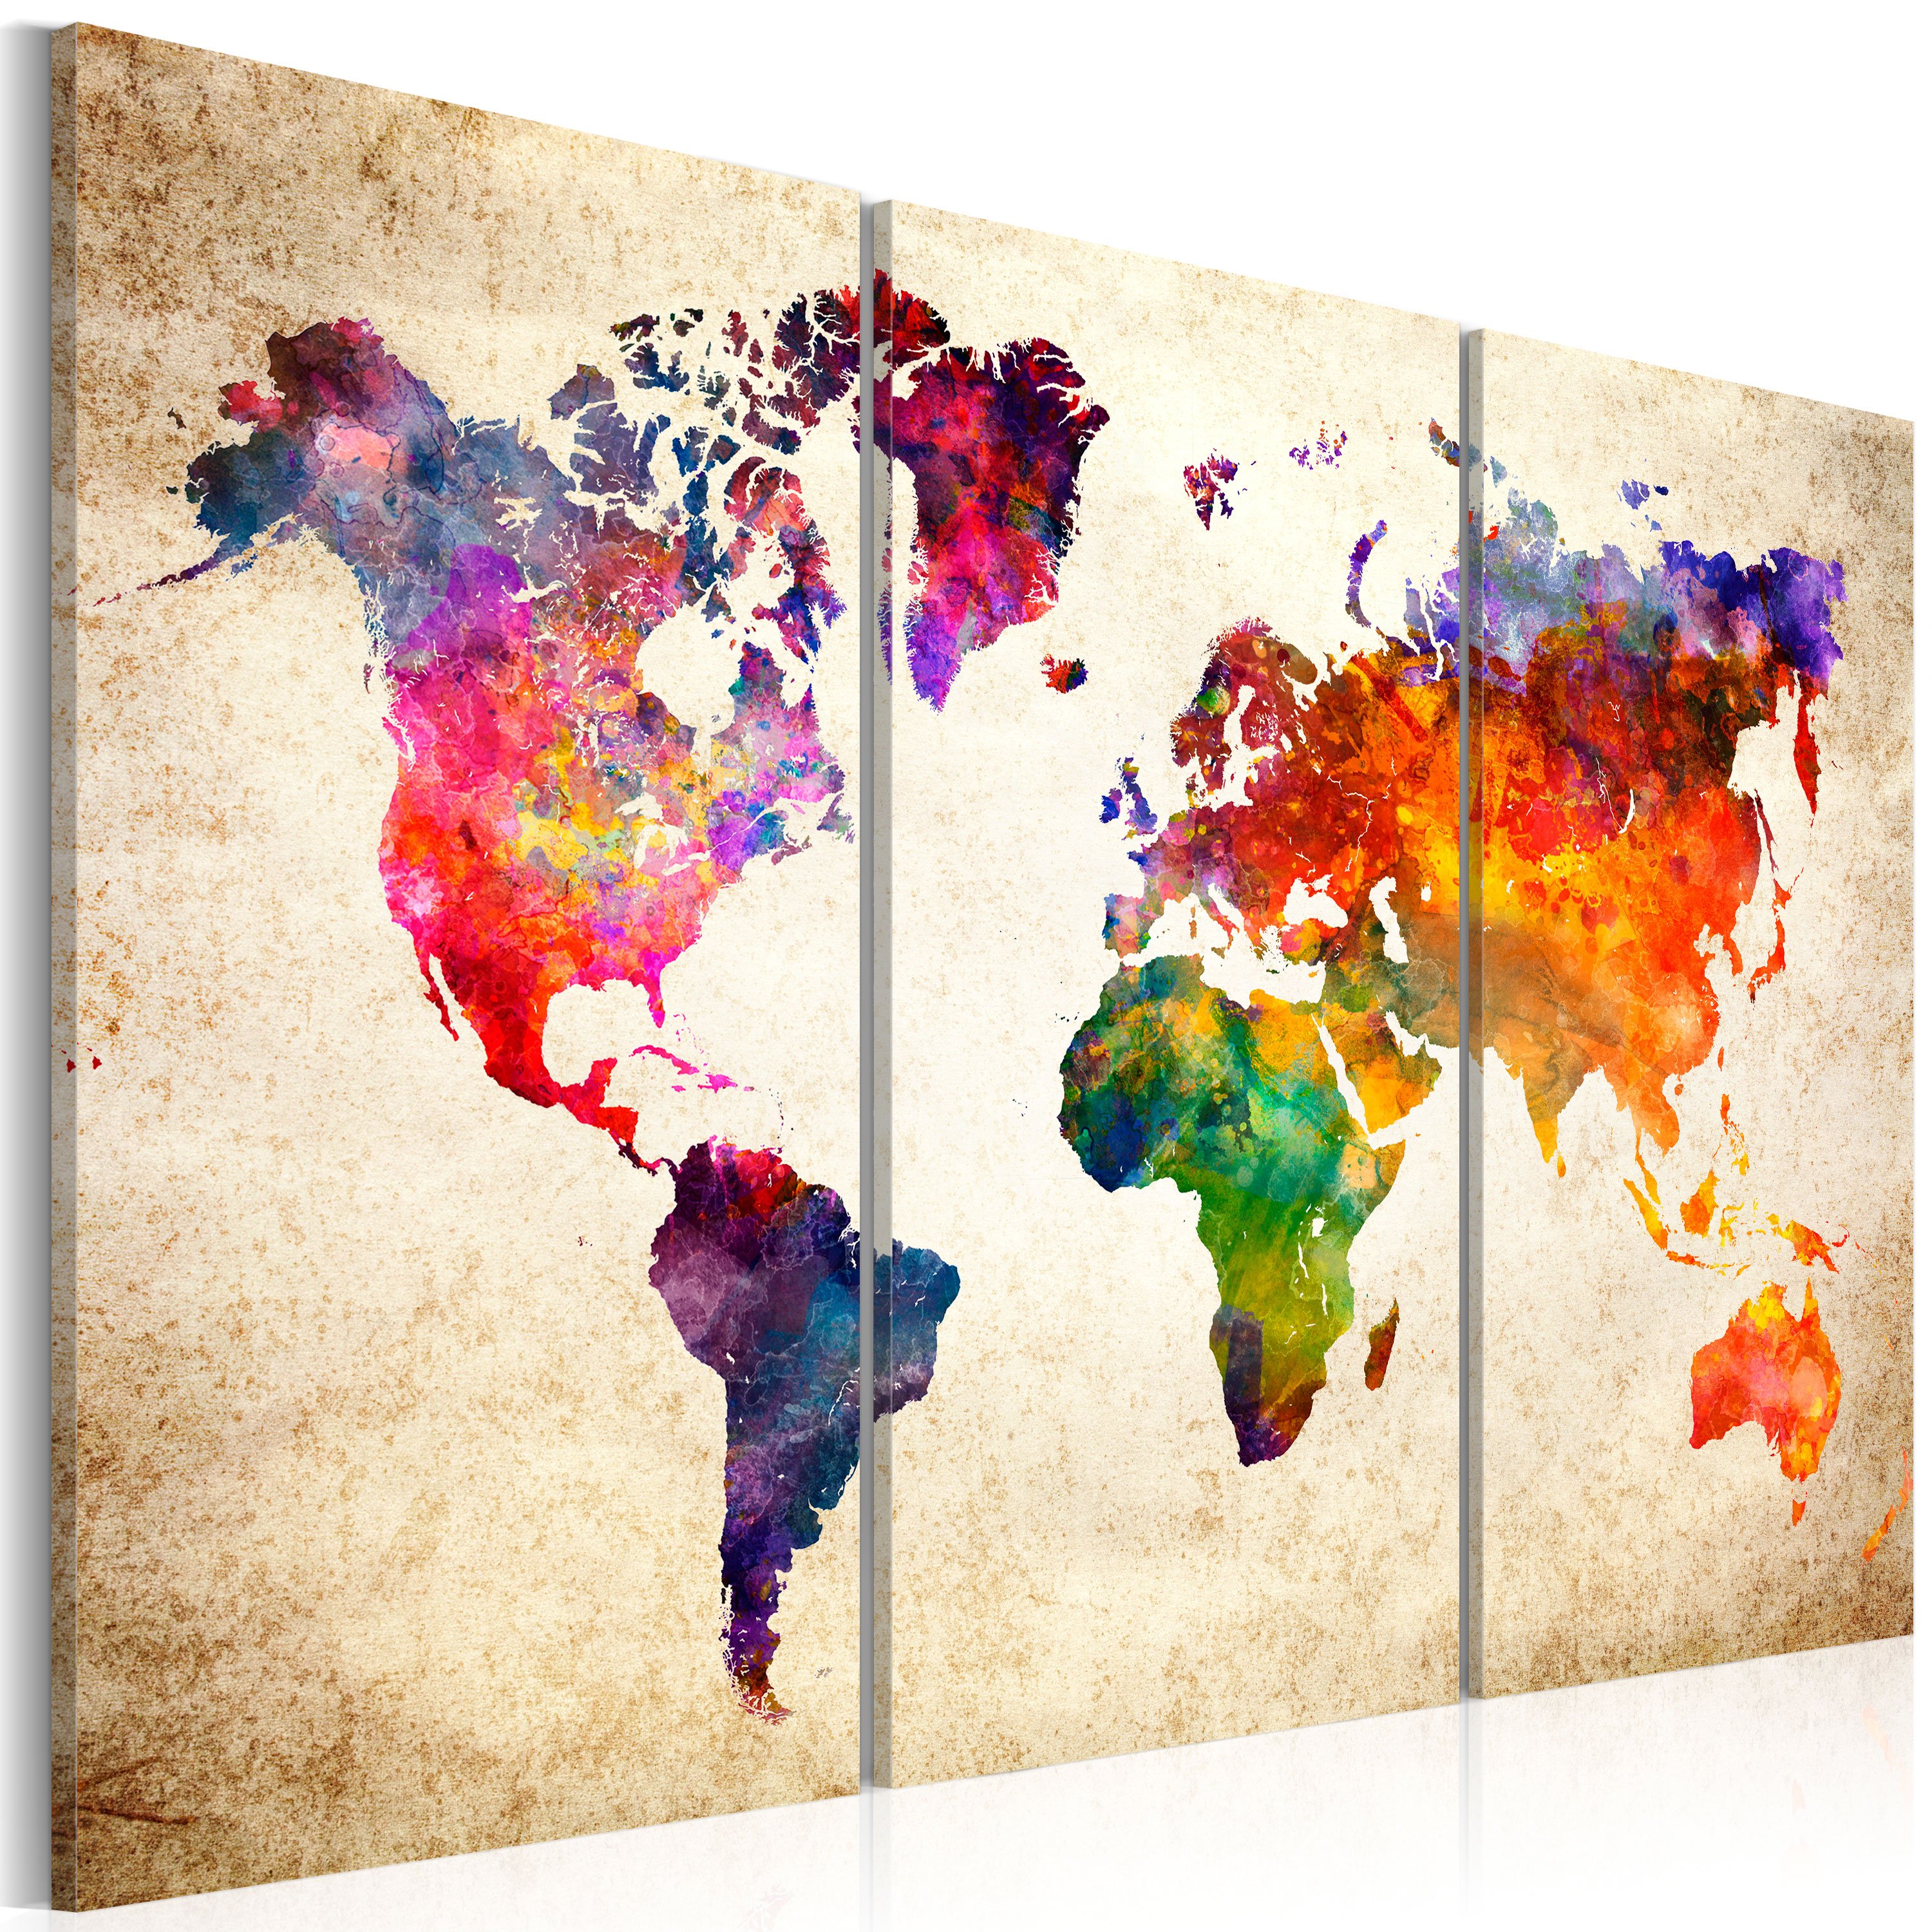 Kunstdruck auf Leinwand 'The World's Map in Watercolor' kaufen | KunstLoft